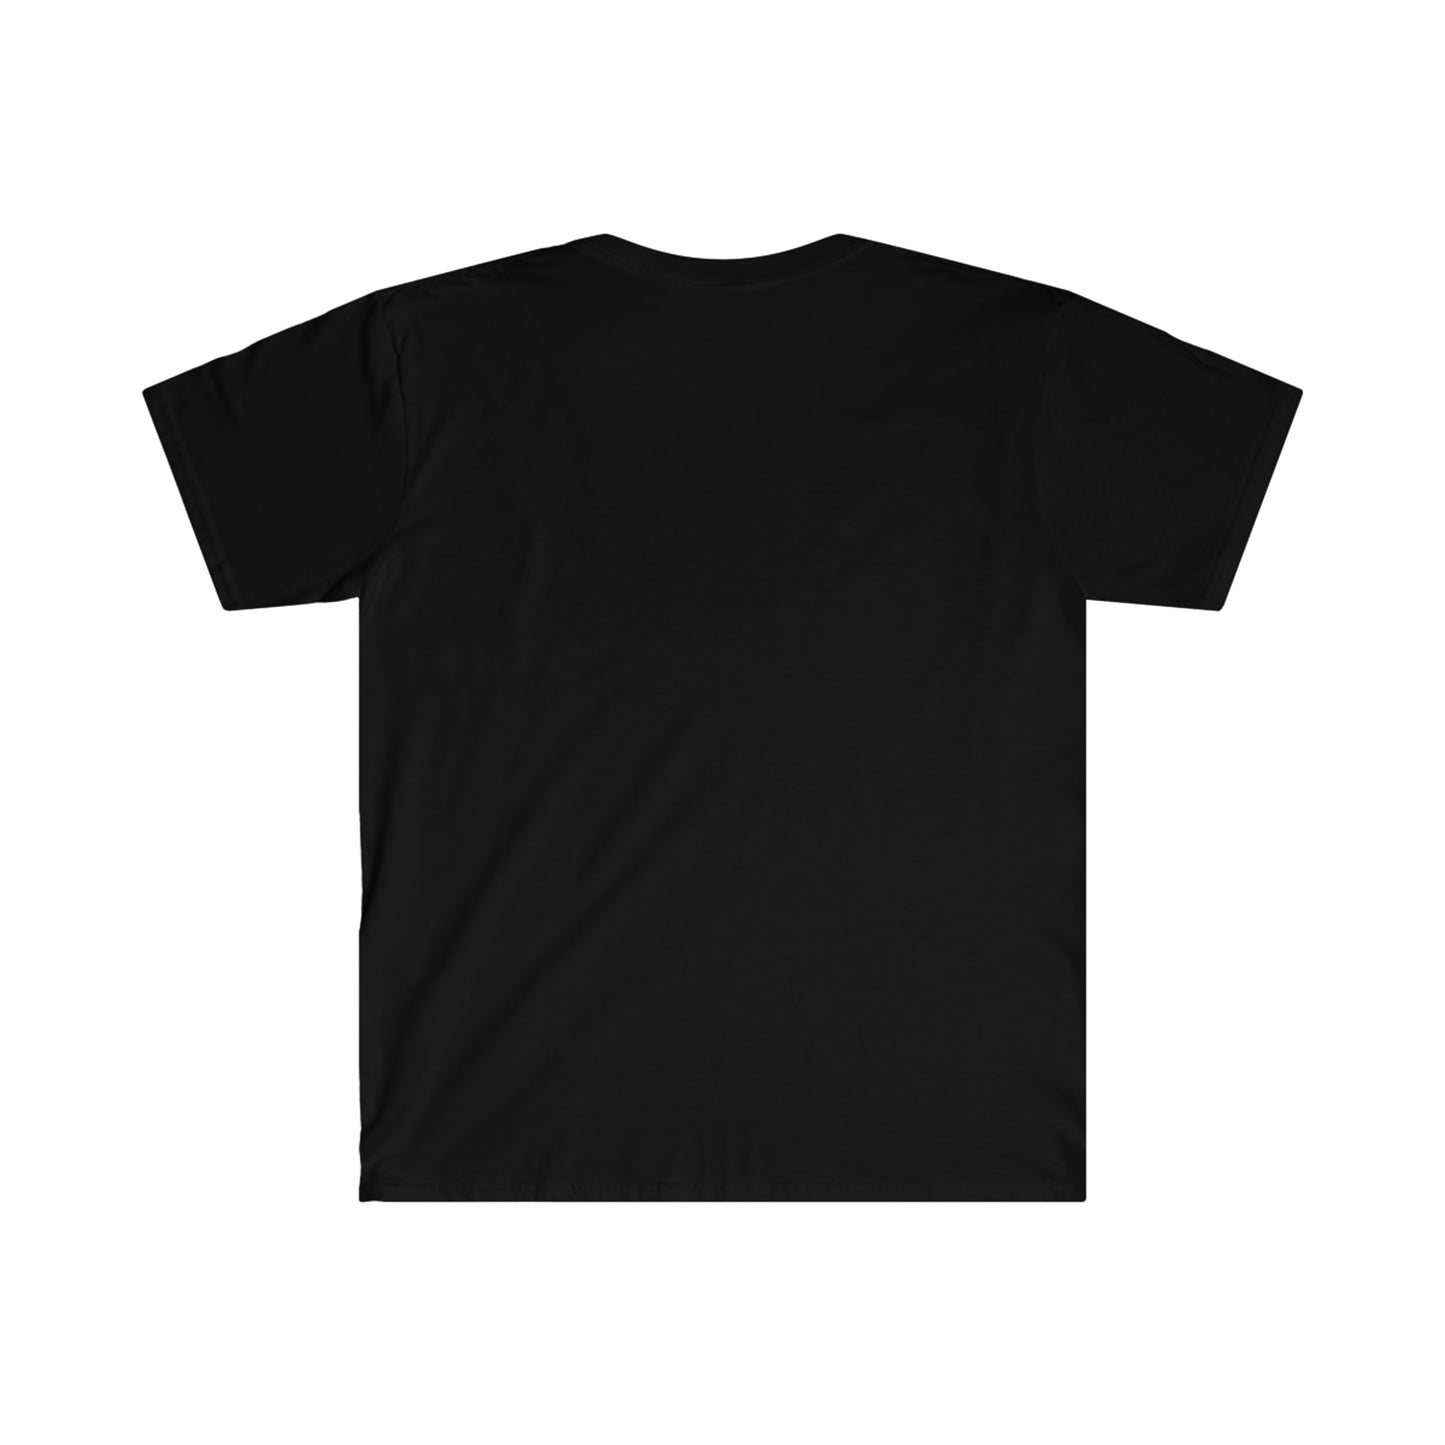 AntiquiTone Black And White Logo Unisex Soft Style T-Shirt